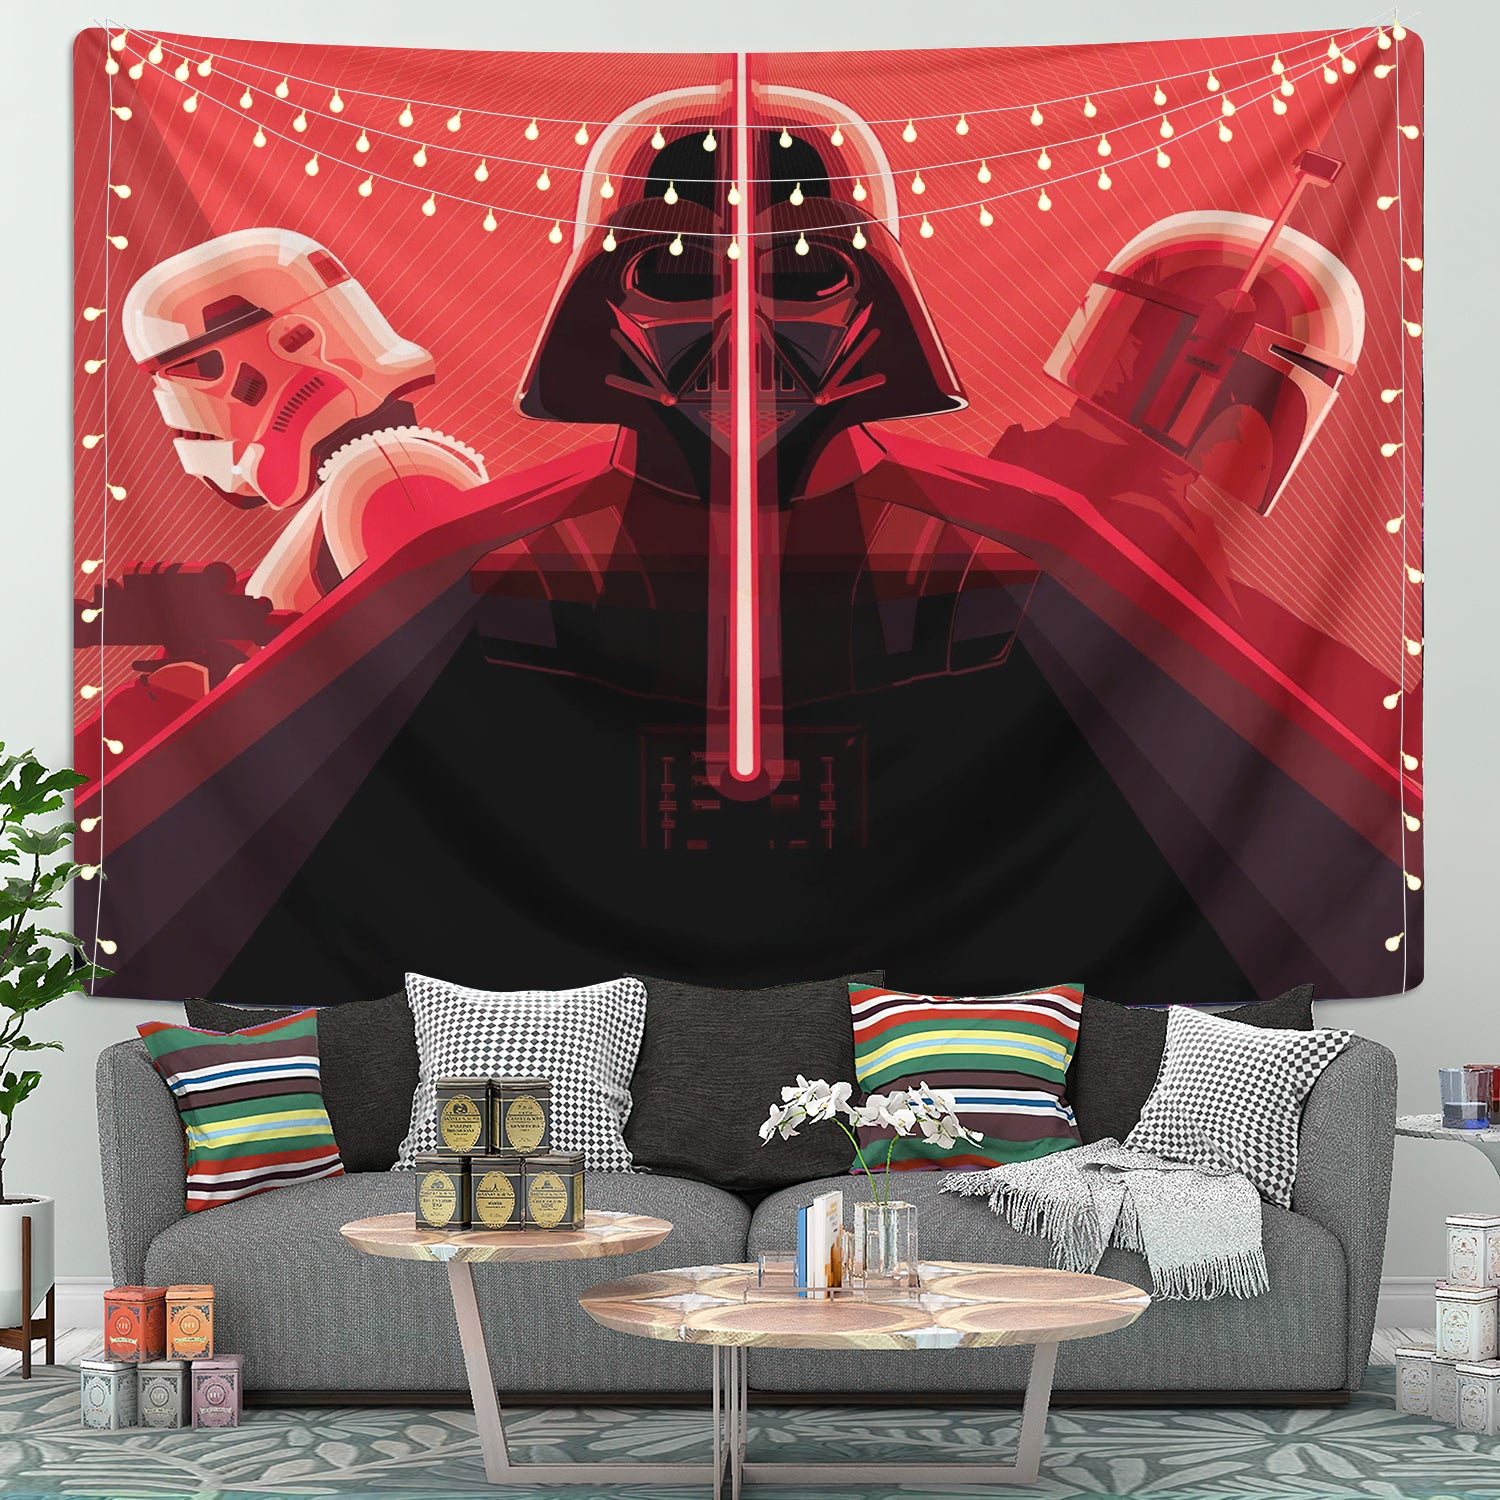 Darth Vader Stormtrooper Tapestry Room Decor Nearkii